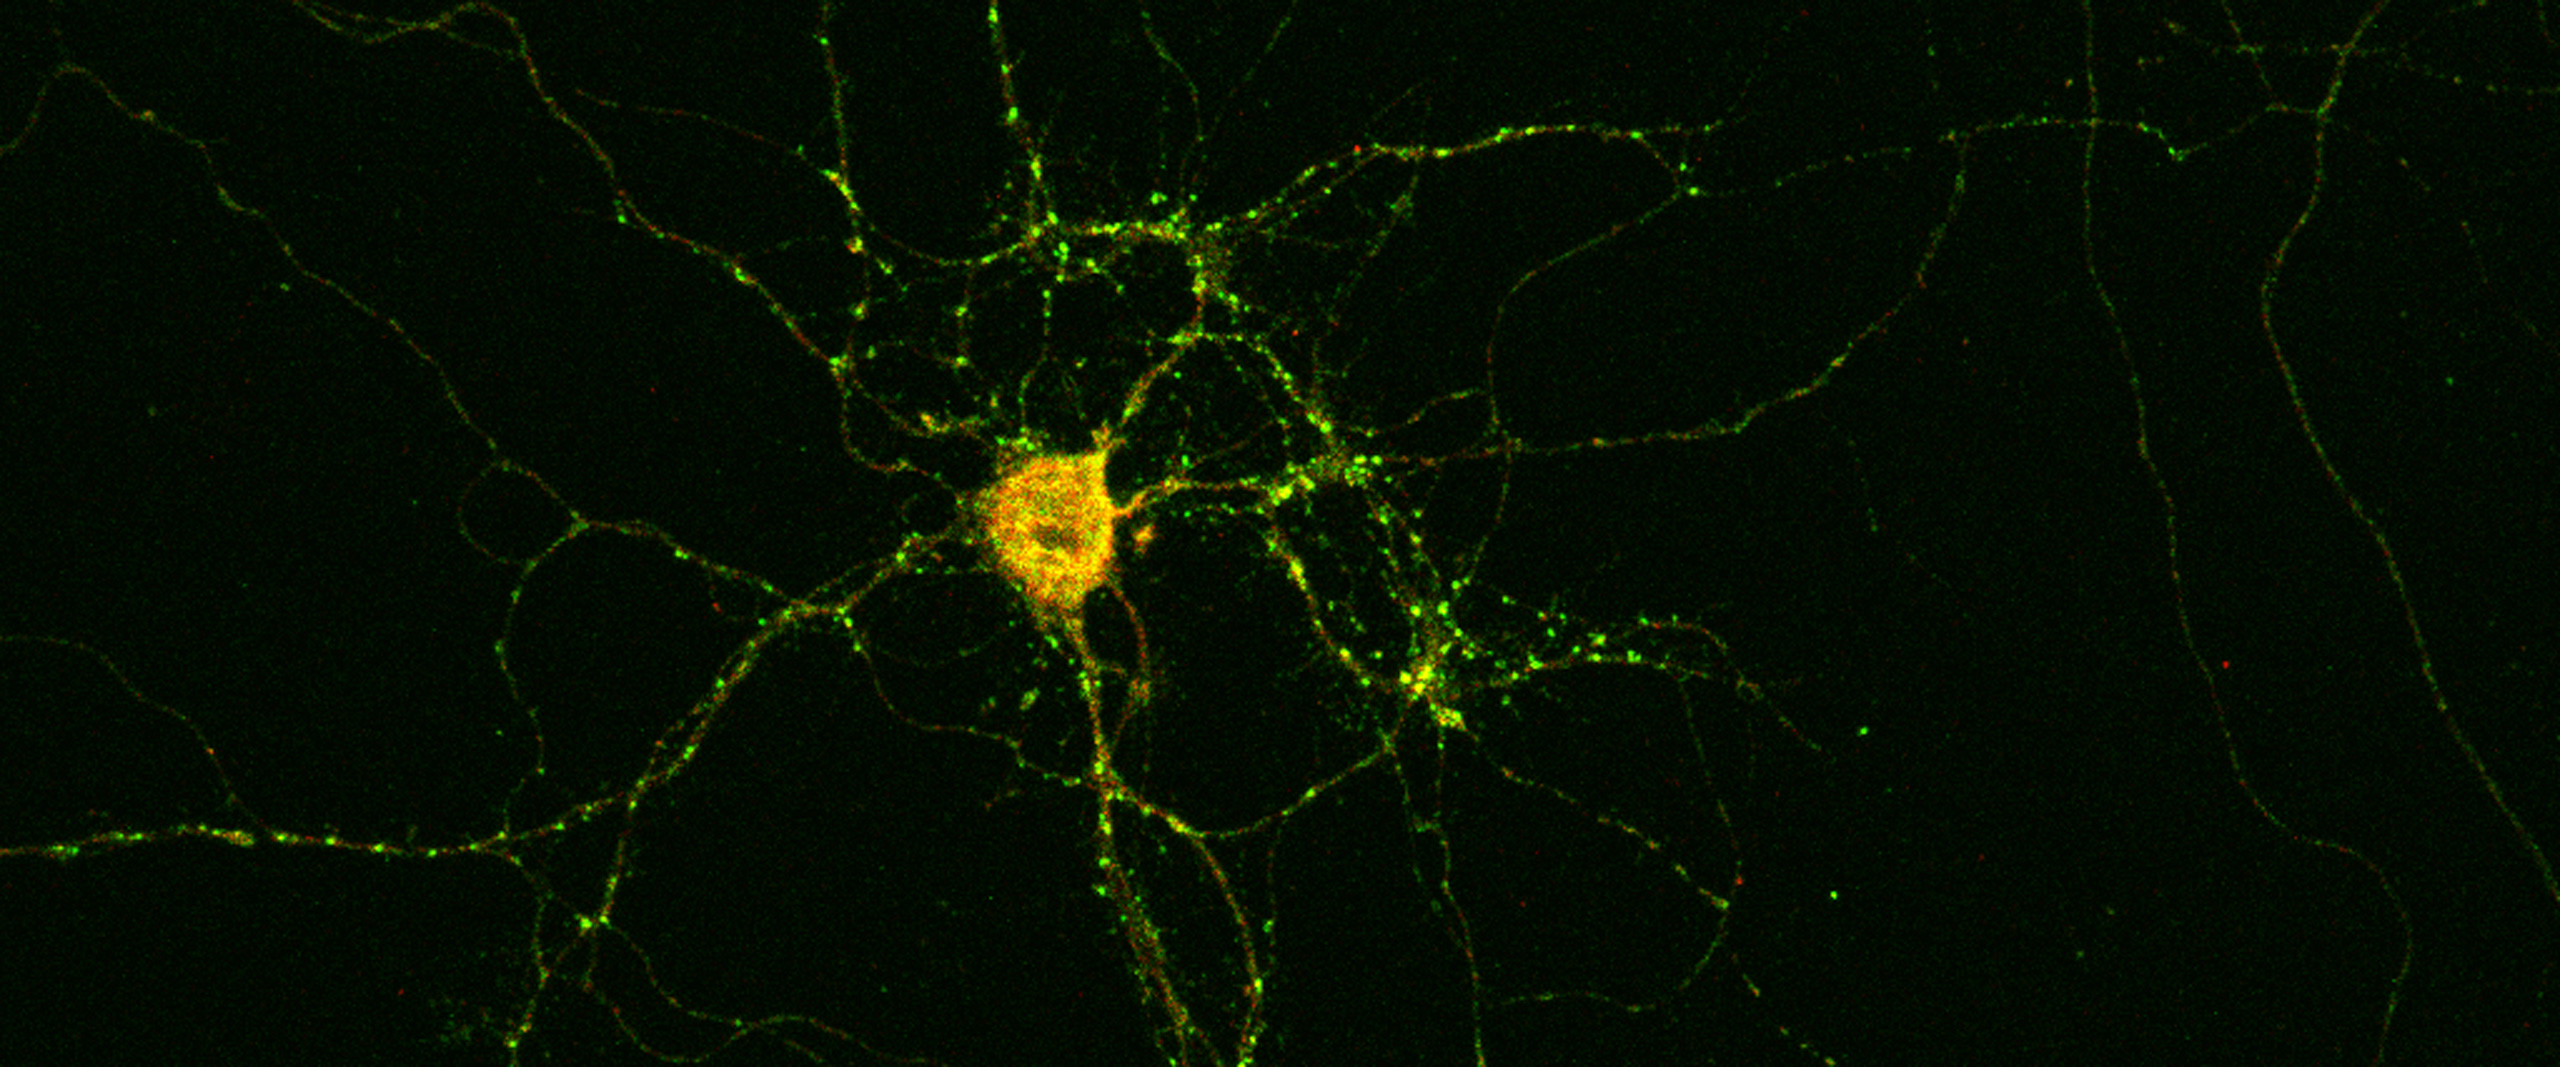 Nervenzelle eines Patienten mit ihren Fortsätzen: Die hellen Punkte markieren die Synapsen, über die sie mit anderen Nervenzellen kommuniziert. Die Anti-Drebrin-Autoantikörper sind gelb gefärbt.